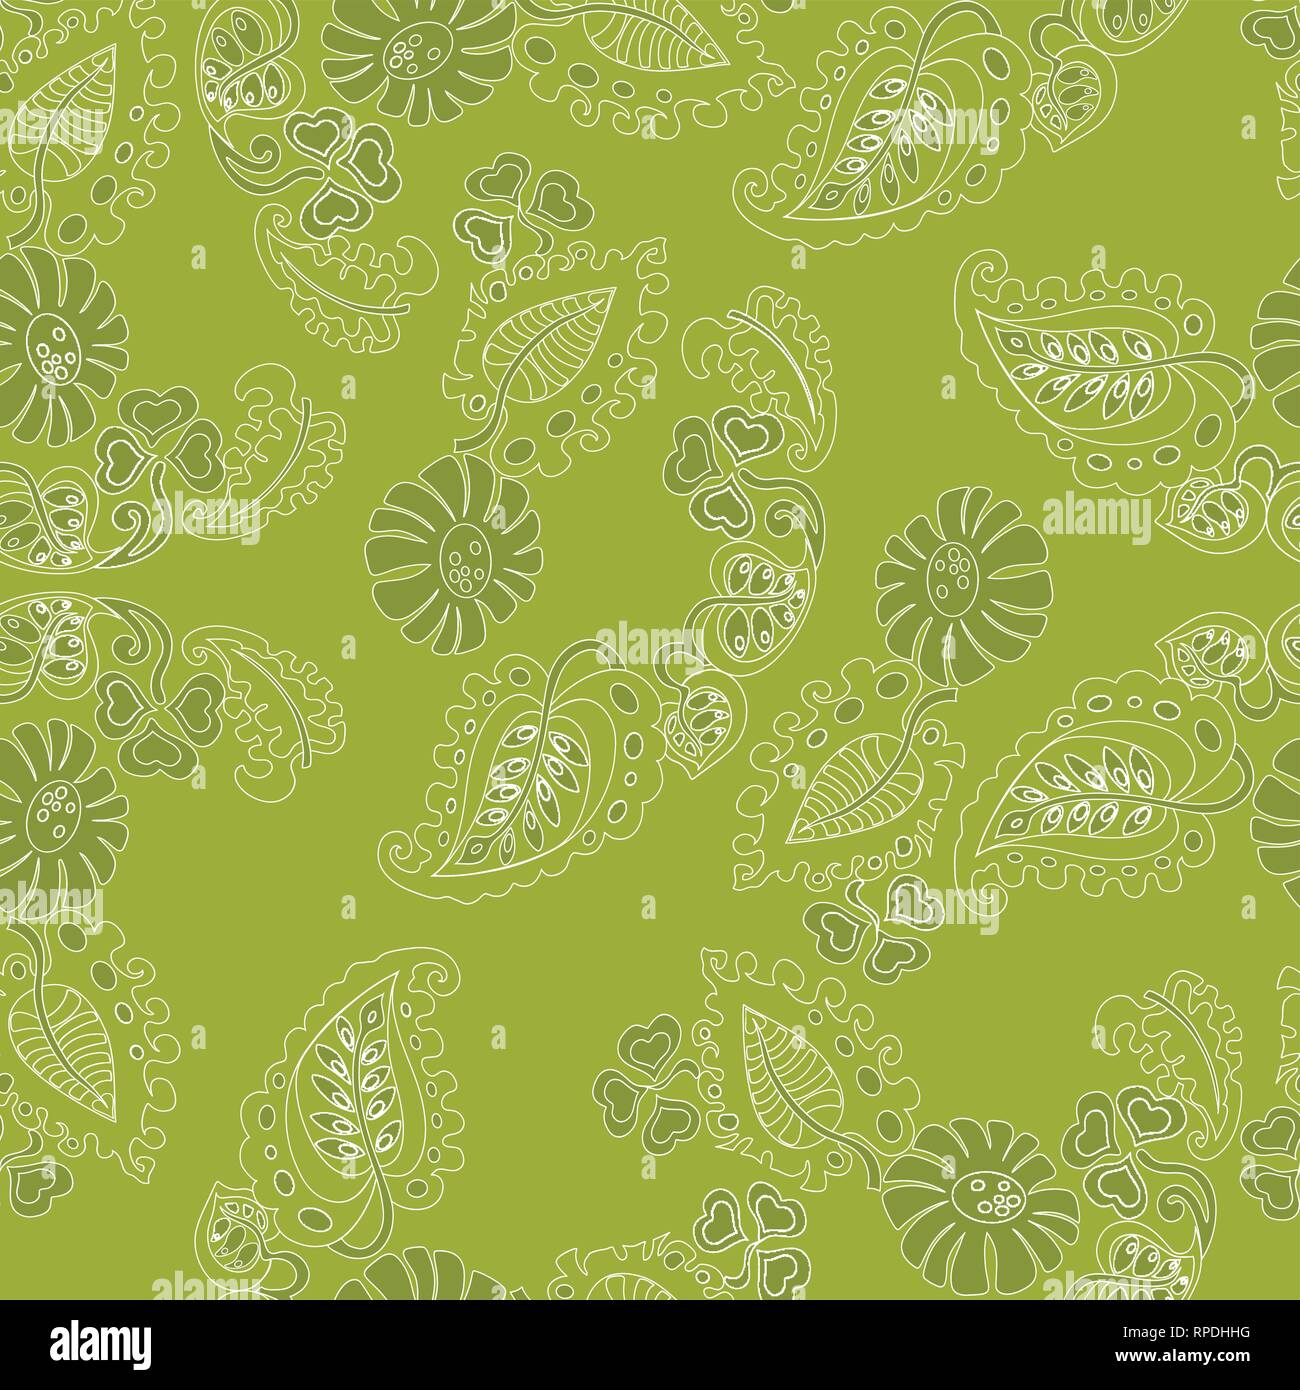 Auf eine Darstellung der Vektor nahtlose Muster mit einem Blumenmuster und Blätter auf einem grünen Hintergrund Stock Vektor